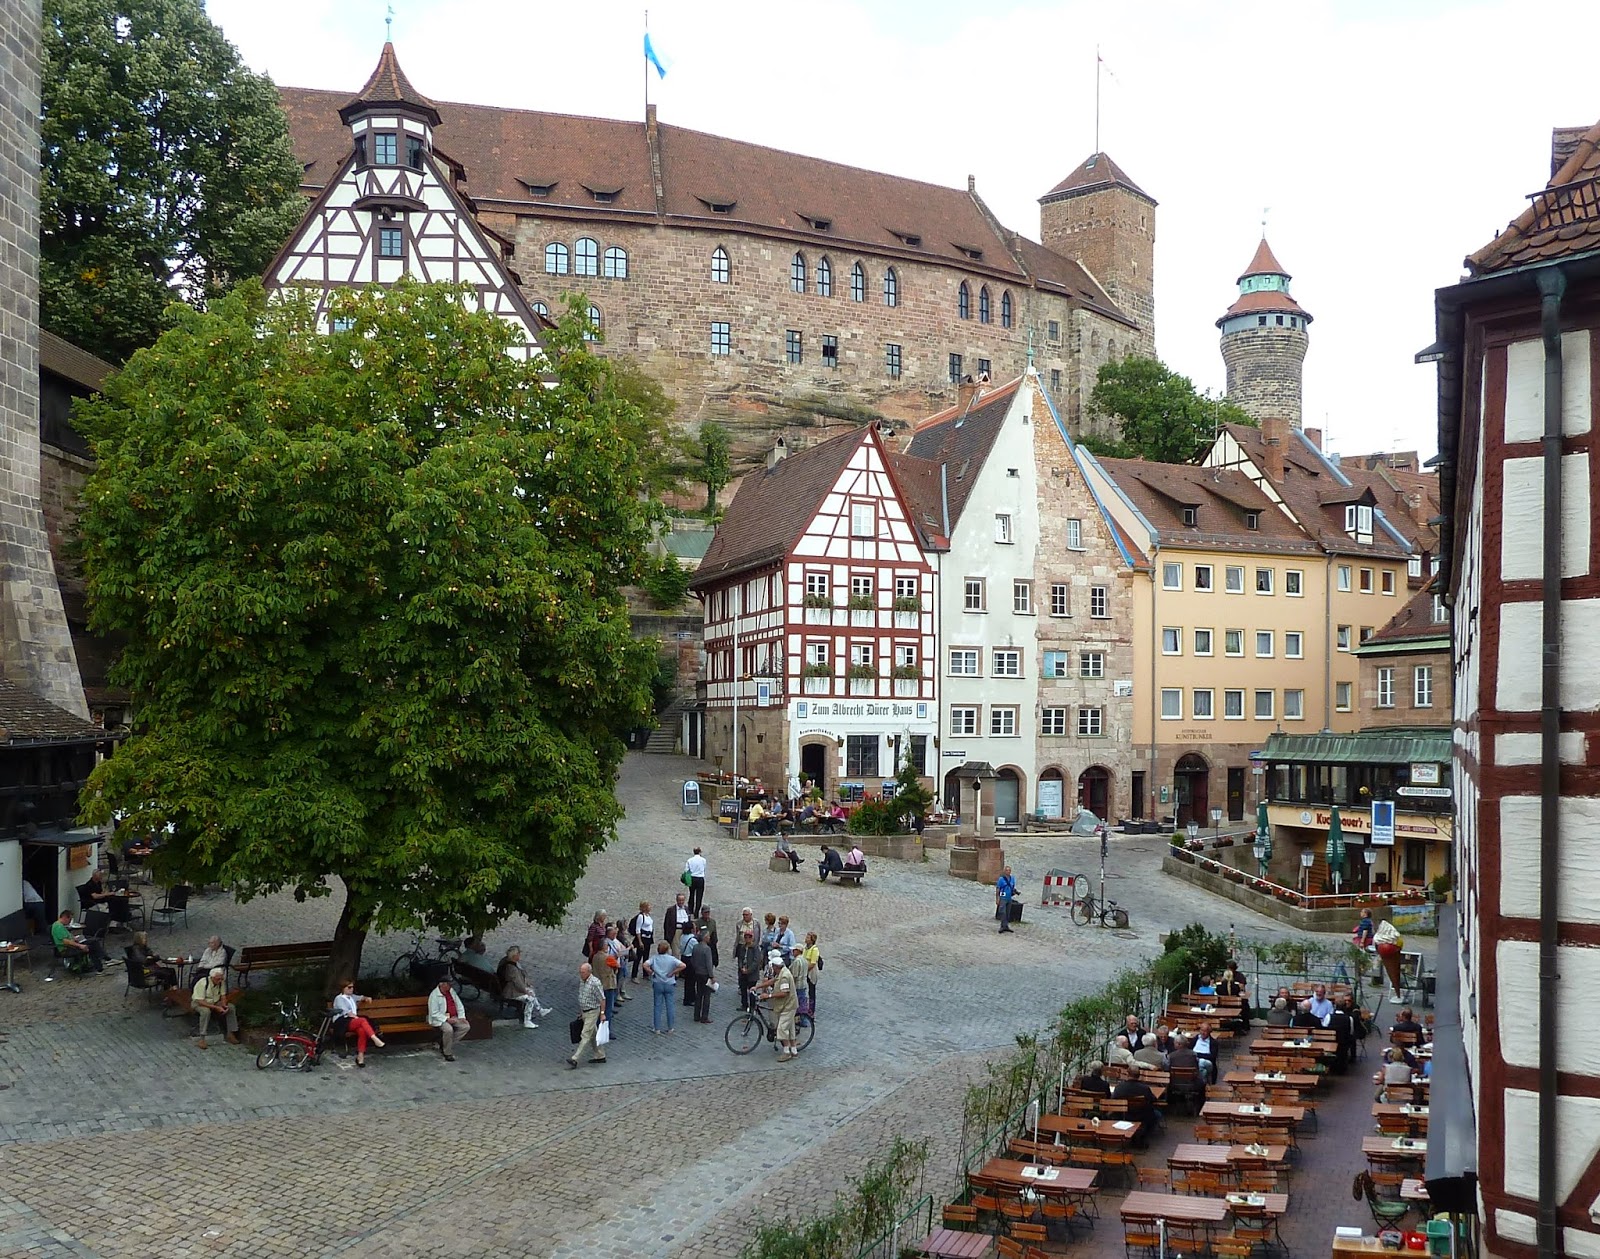 The Beer Nut: Big in Nuremberg